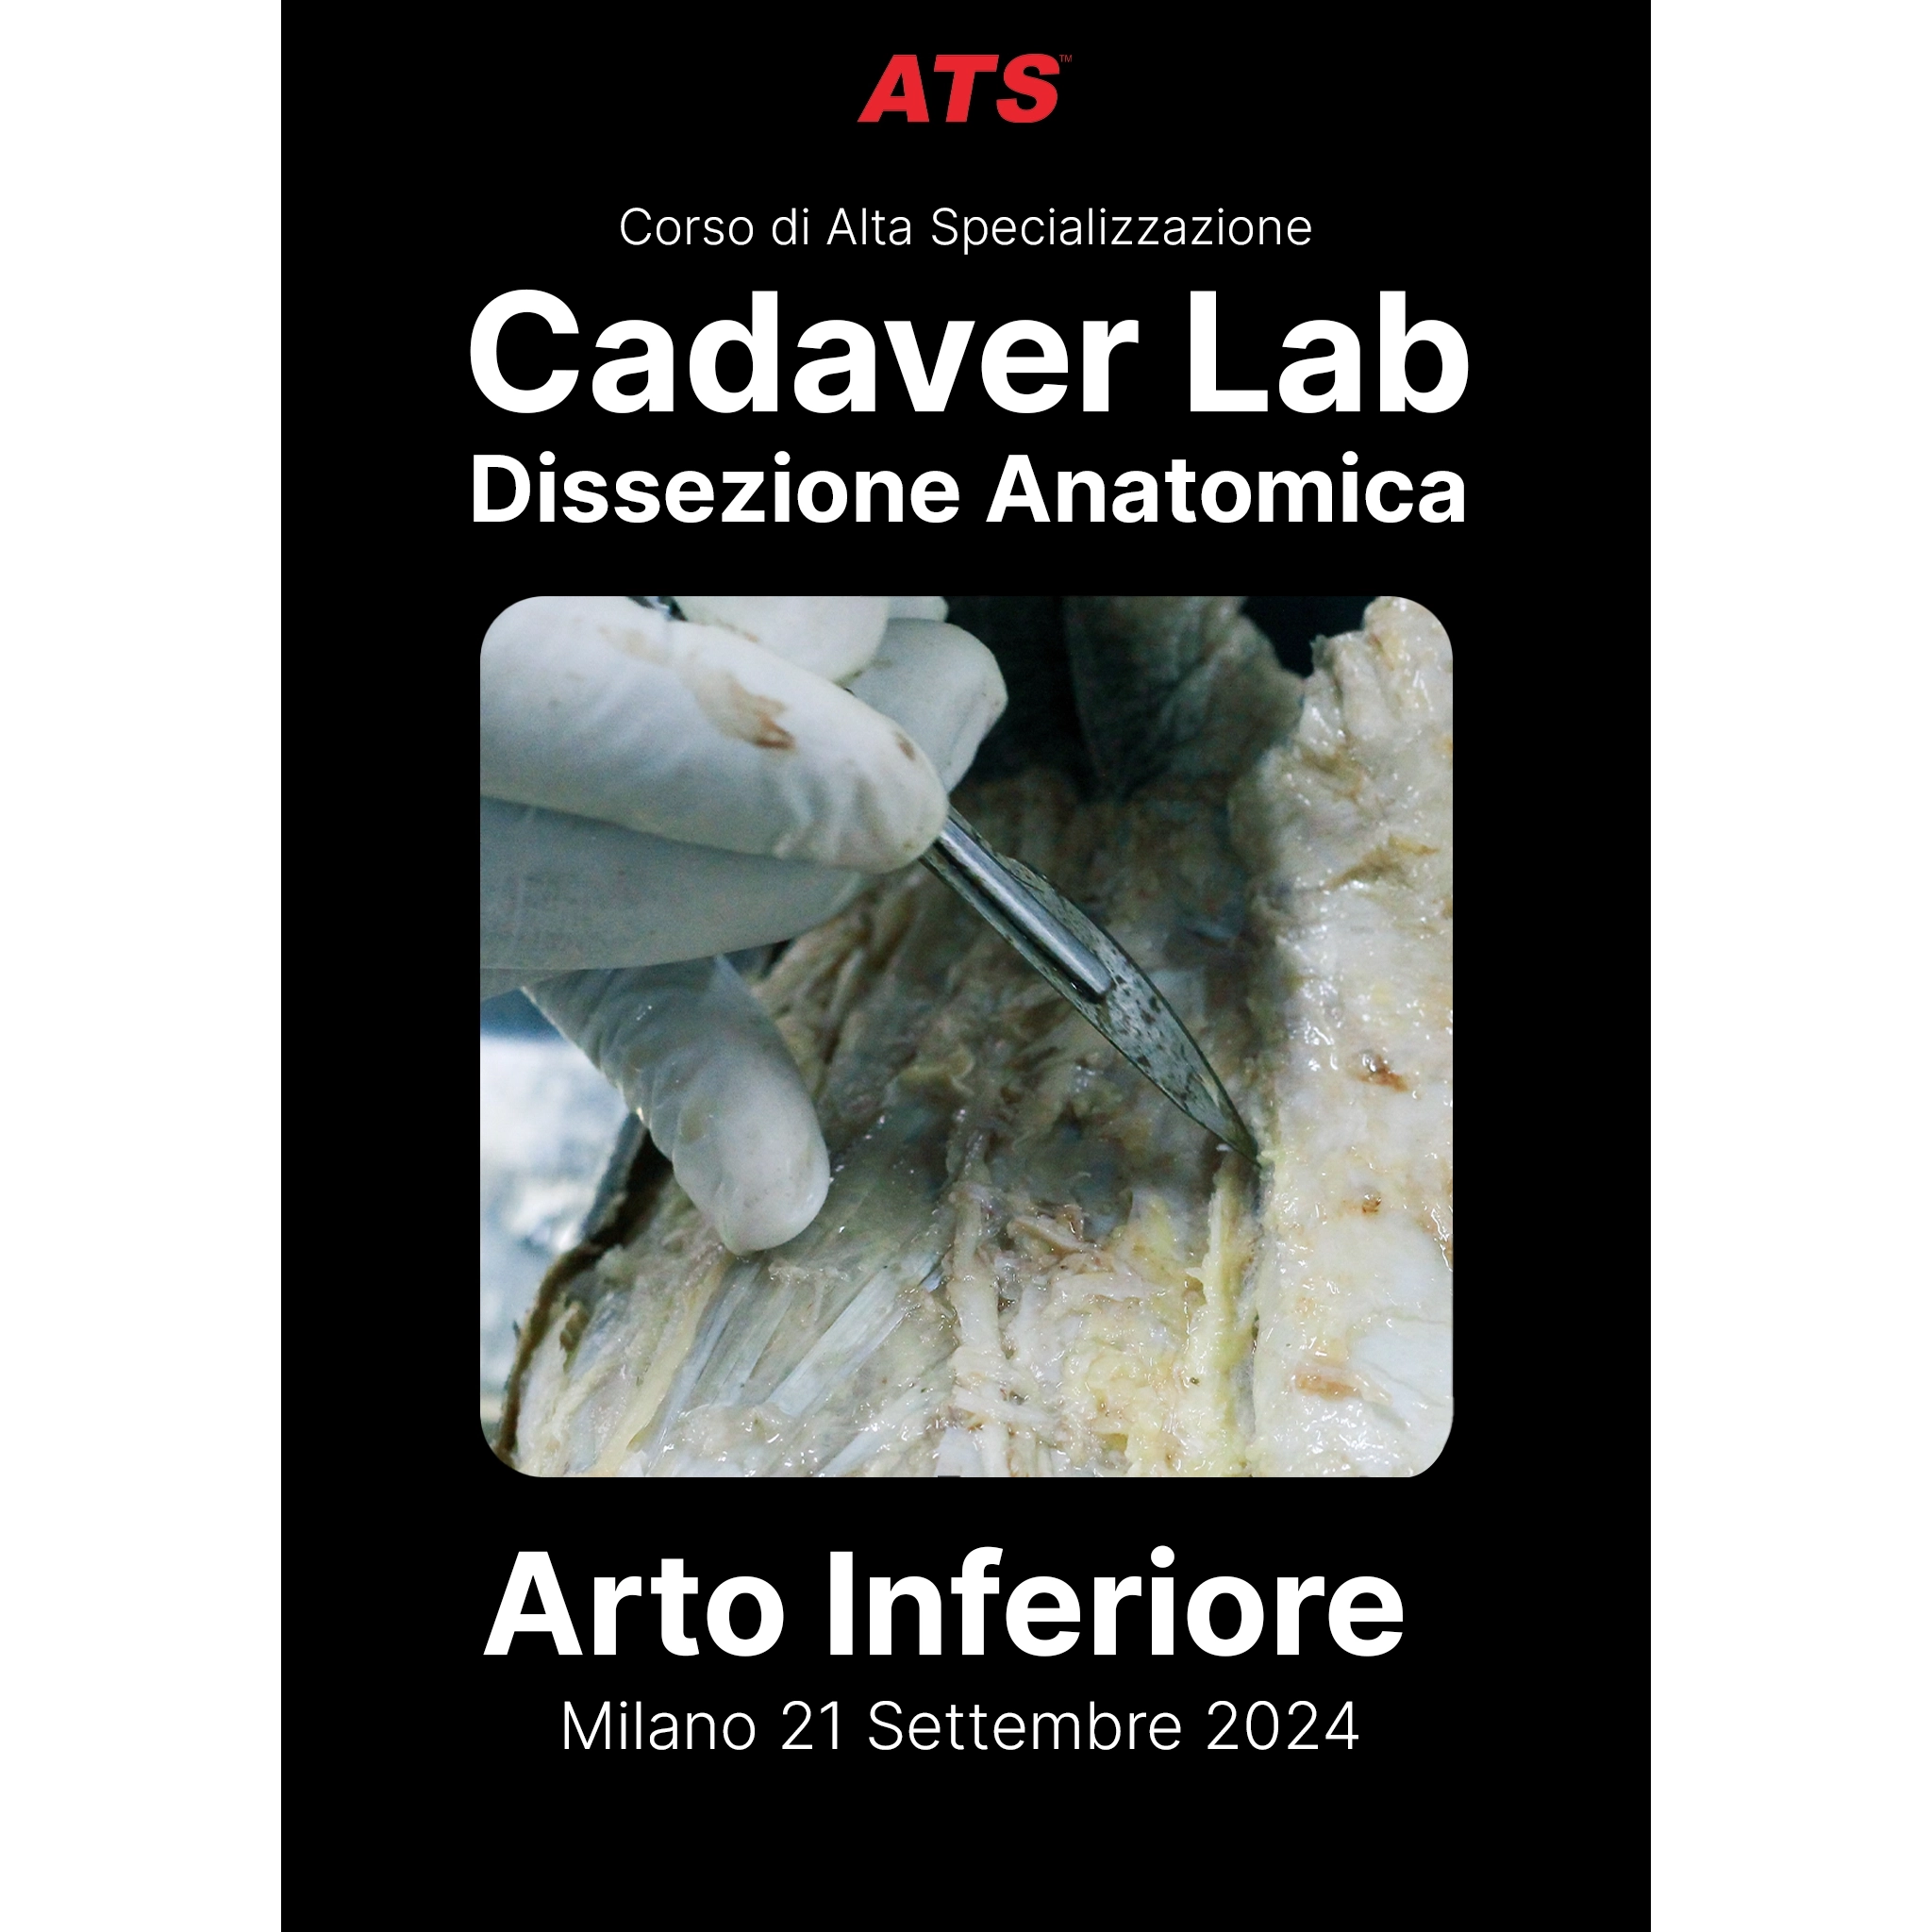 Arto-Inferiore-Cadaver-Lab-ATS